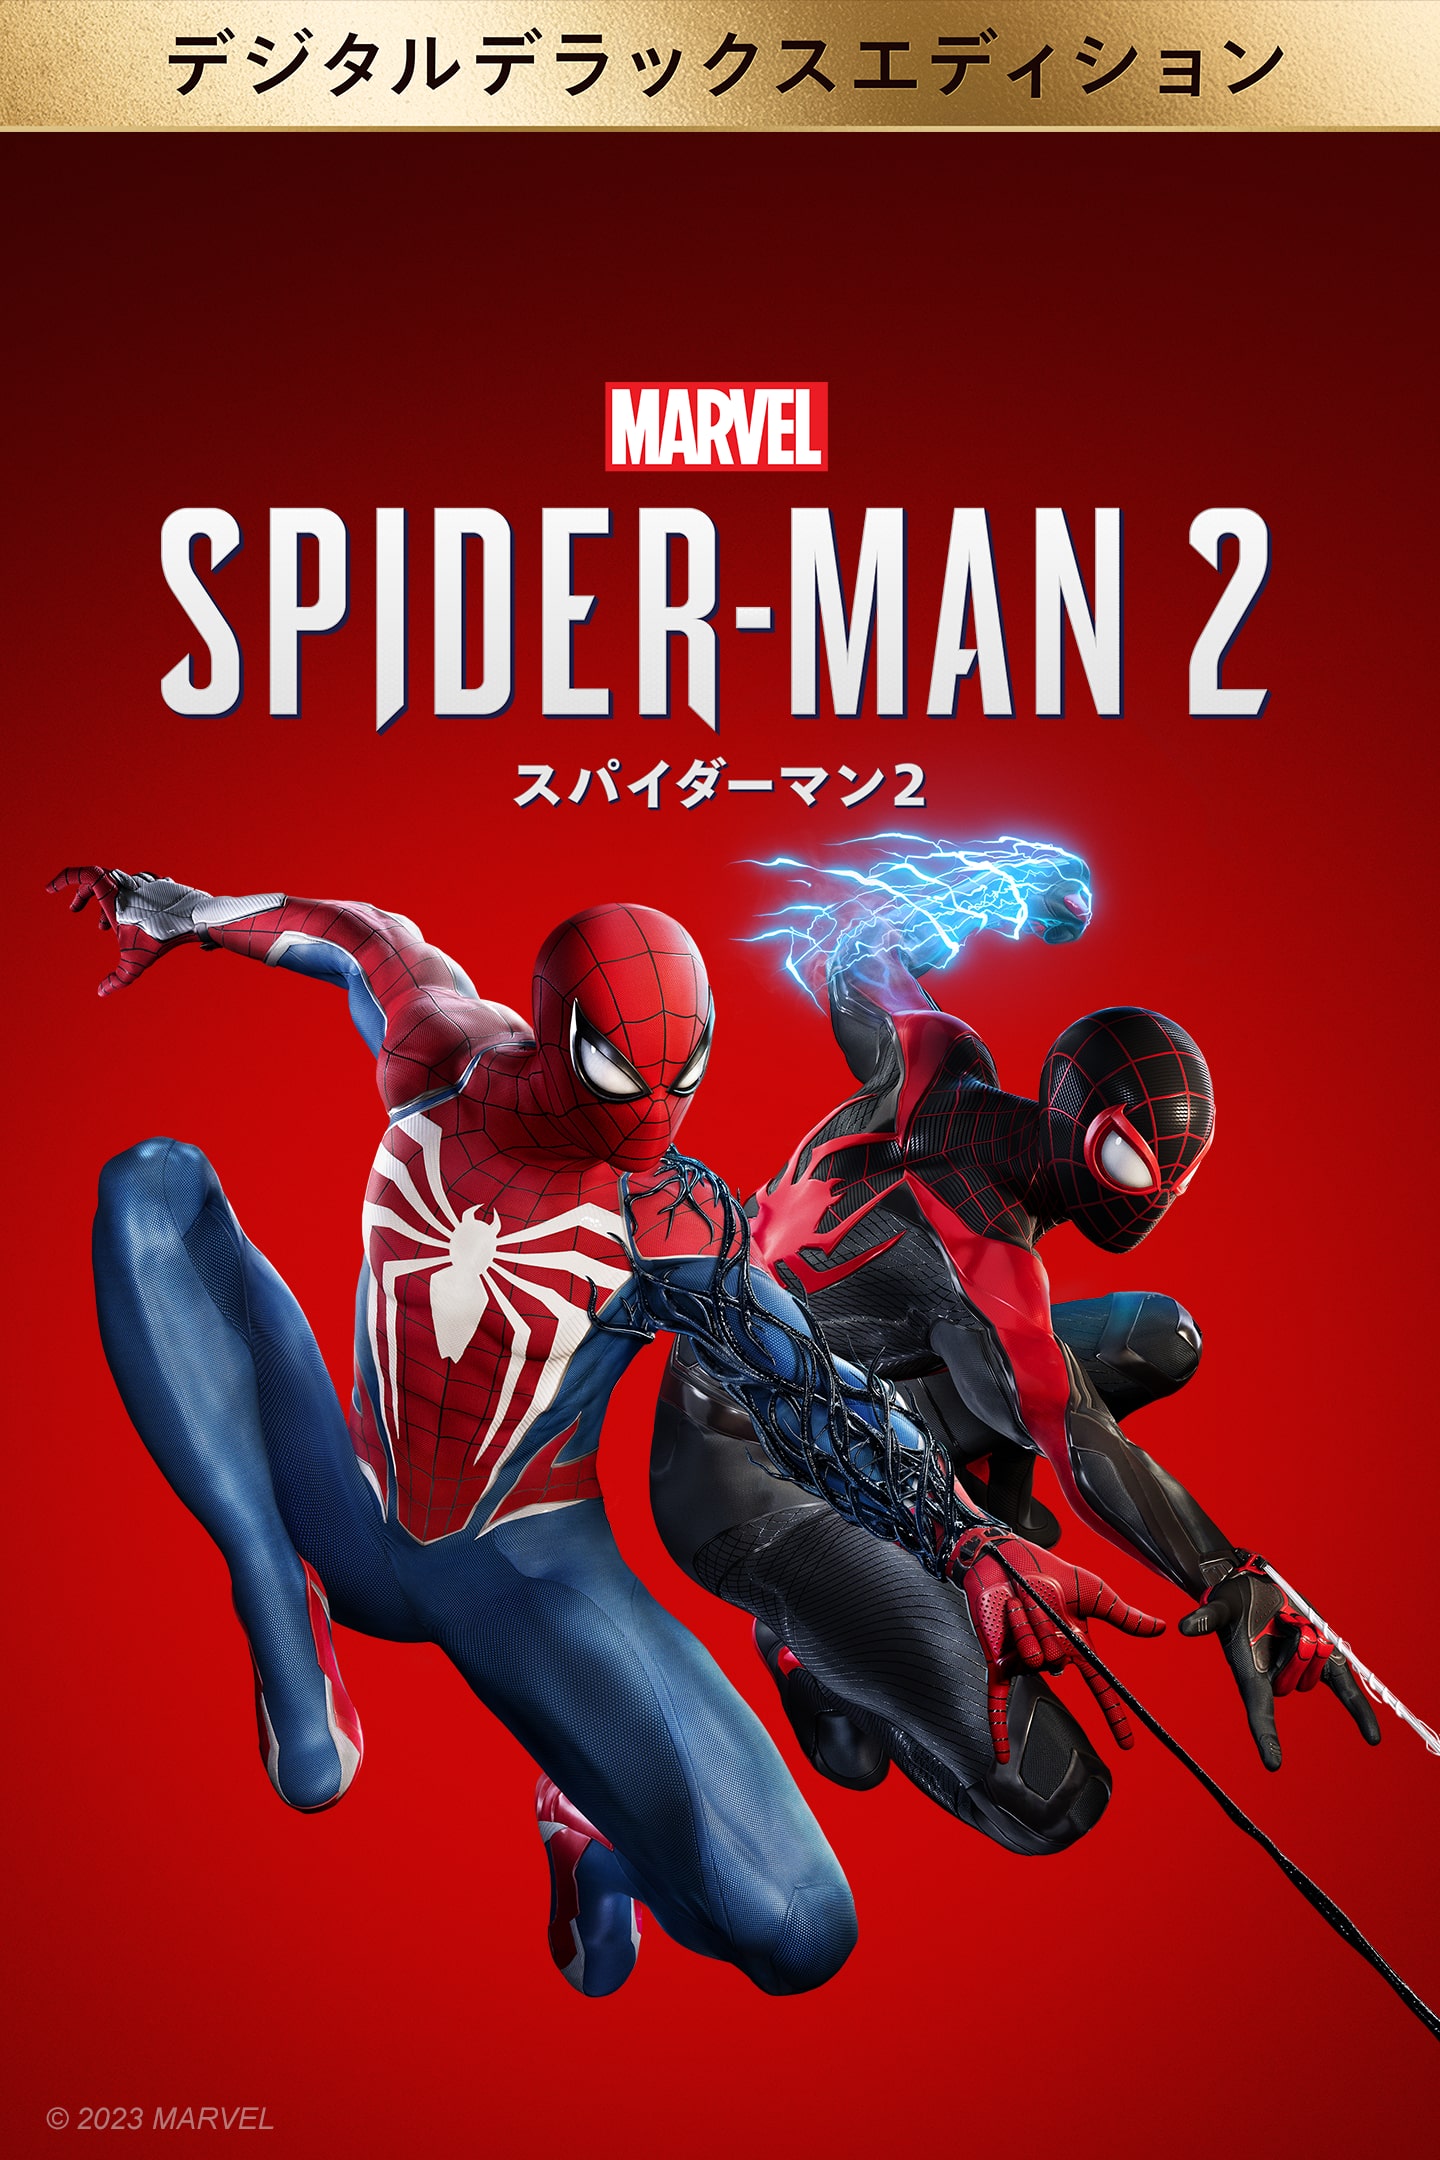 【ブックス限定配送パック】Spider-Man 2【早期購入封入特典】